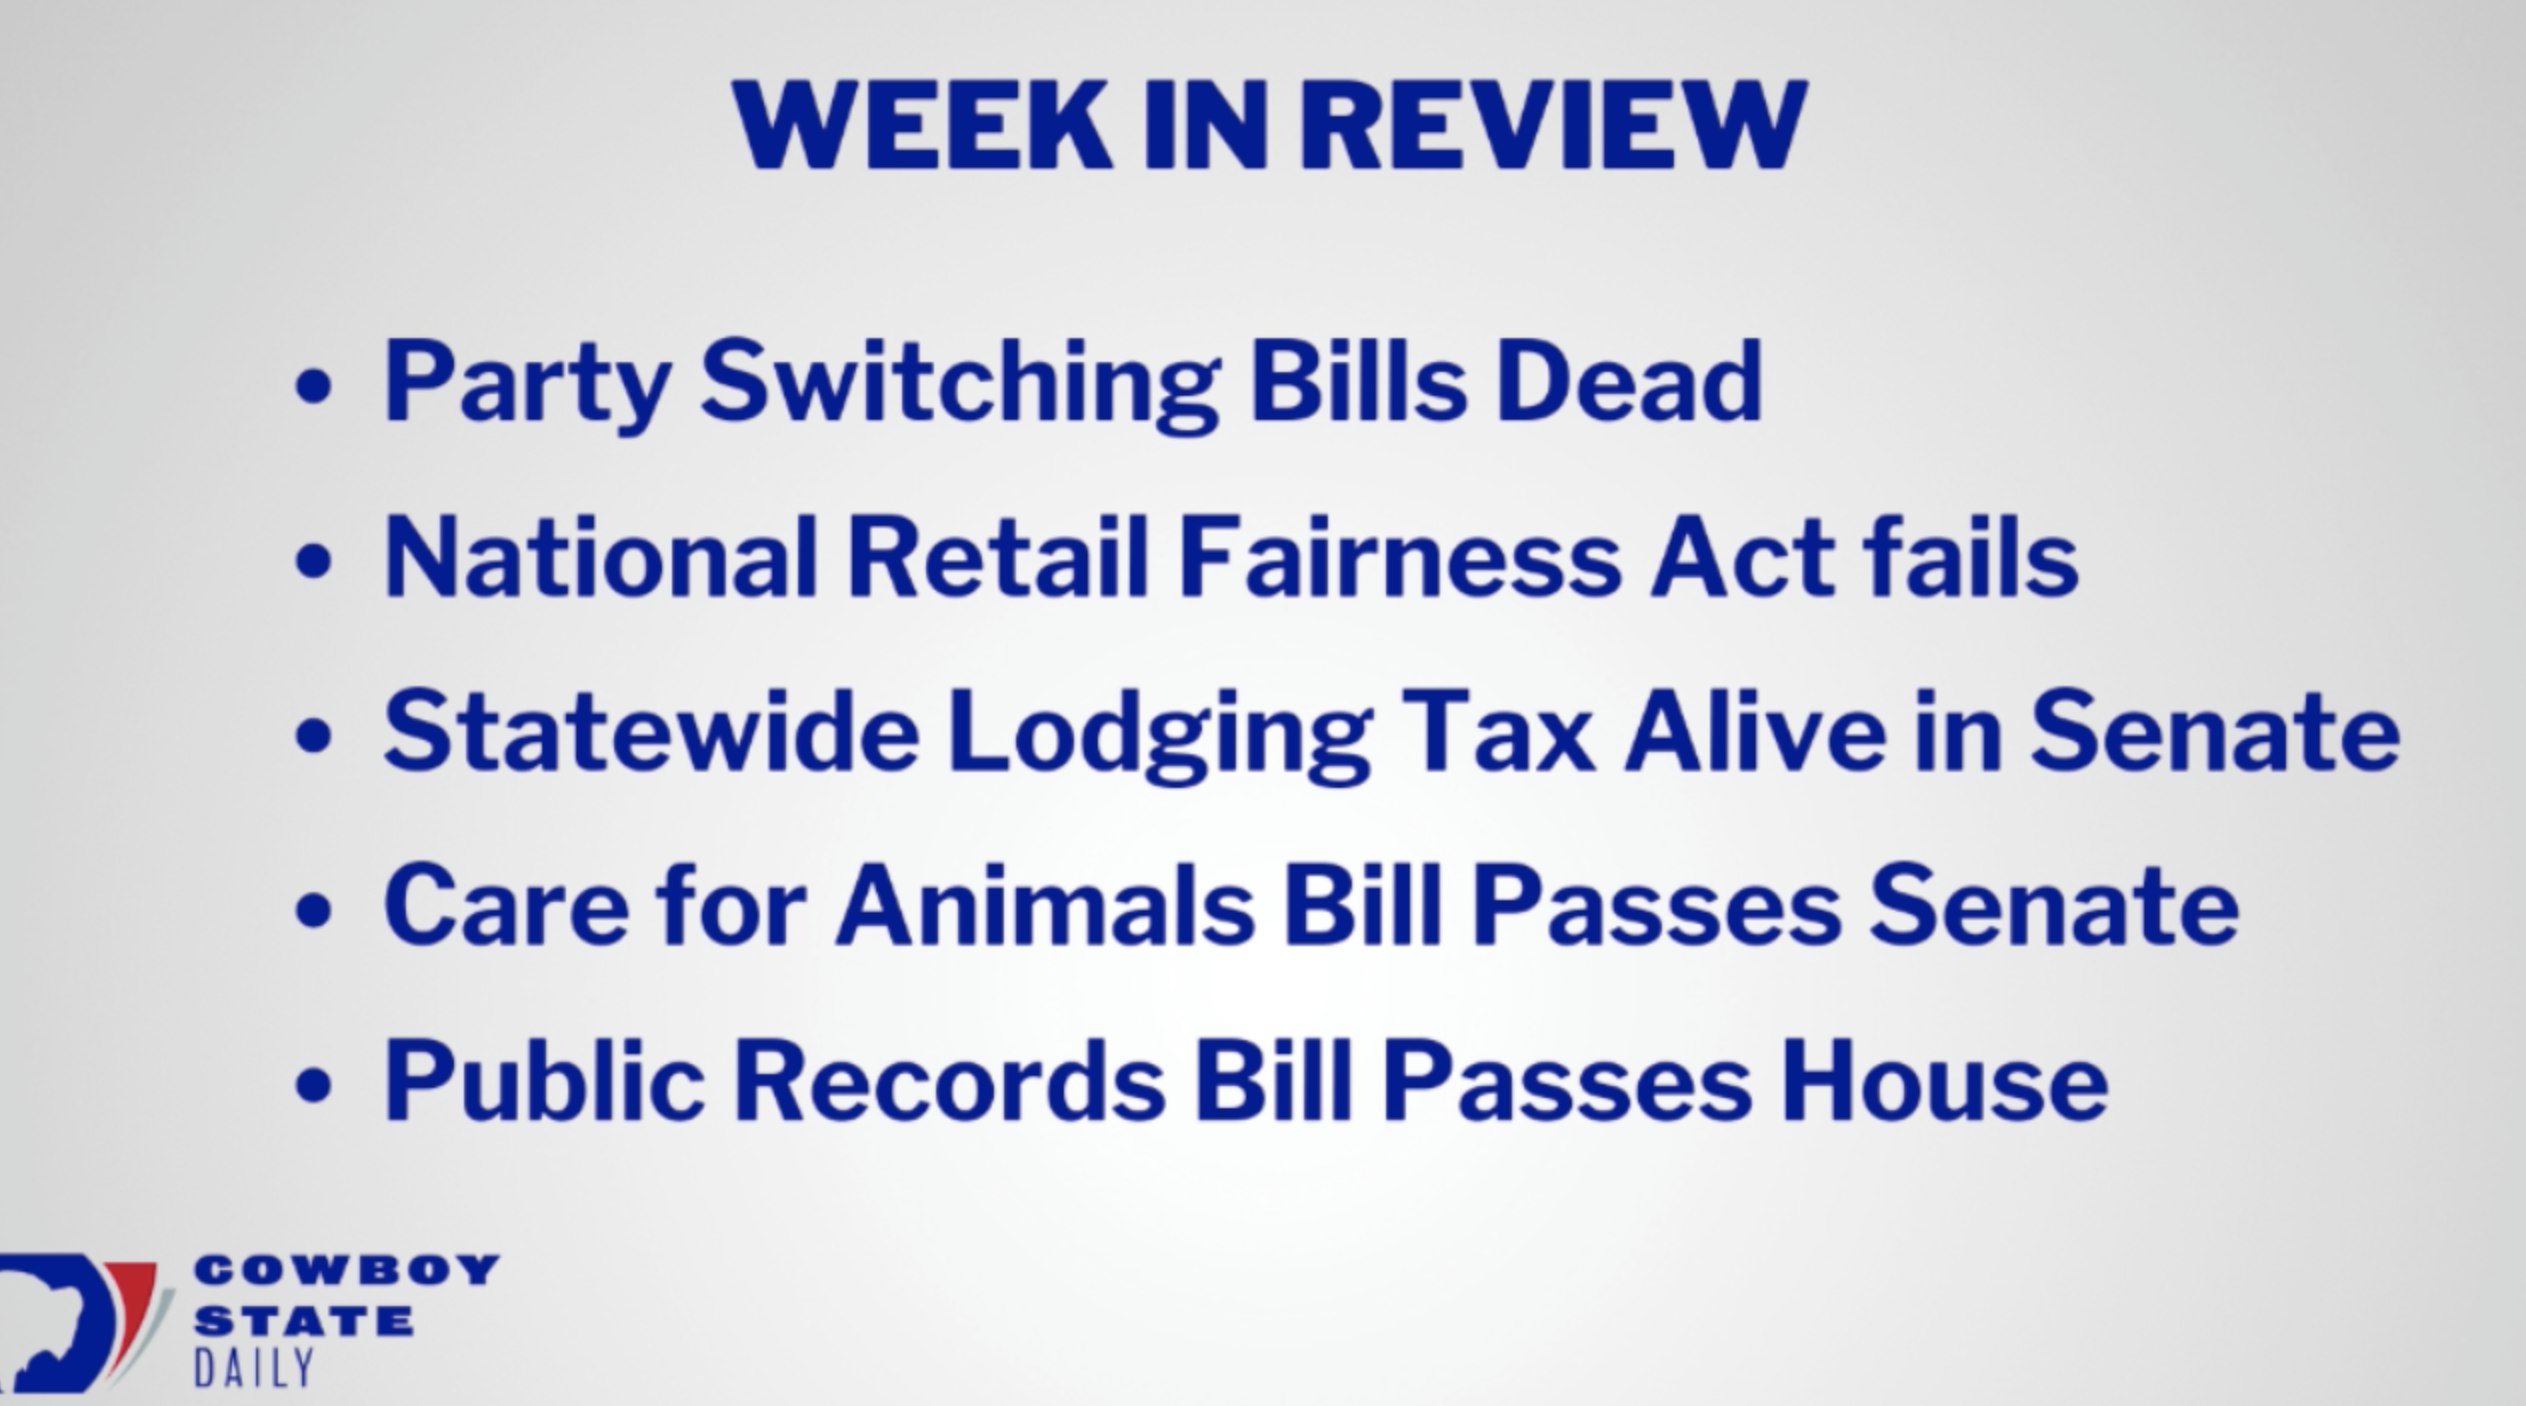 Wyoming Legislative Week in Review 2 23 19